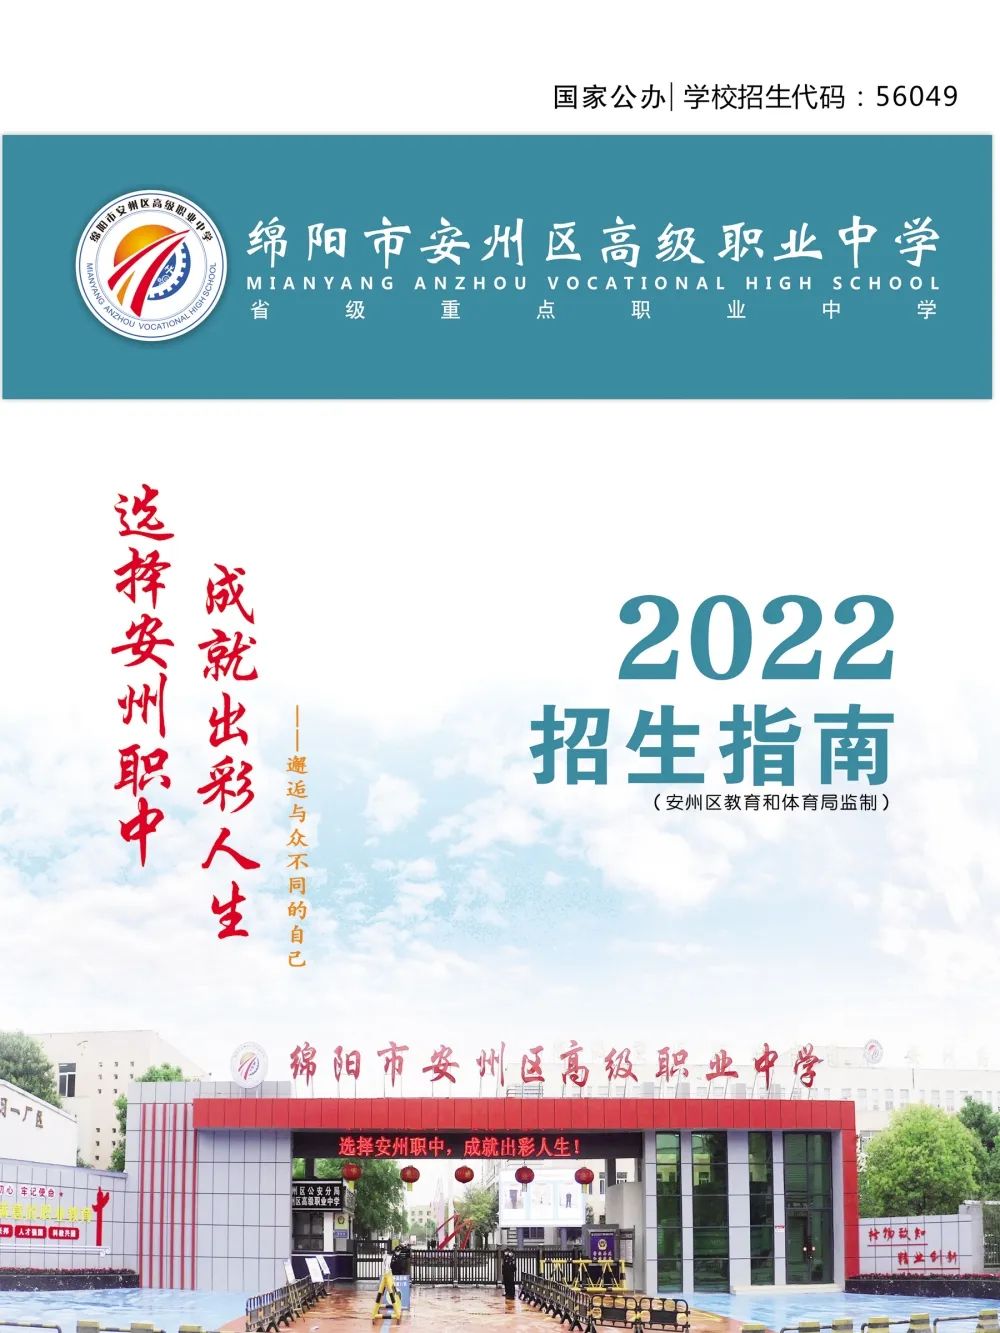 绵阳市安州区高级职业中学2022年招生简章